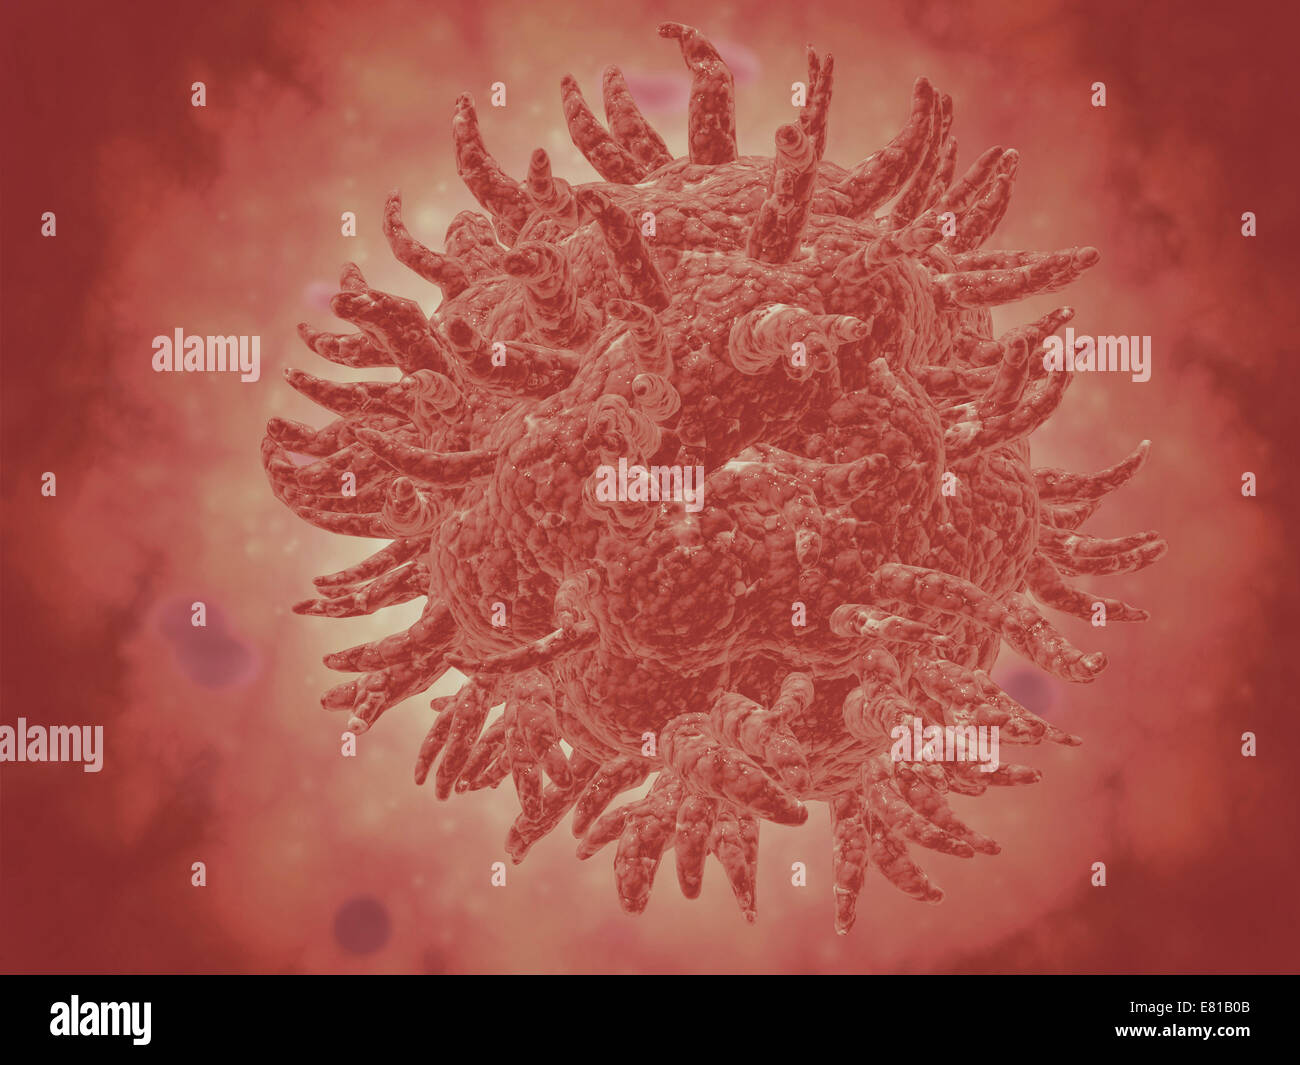 Vista microscopica del virus della febbre gialla. La febbre gialla è una grave malattia virale. Foto Stock